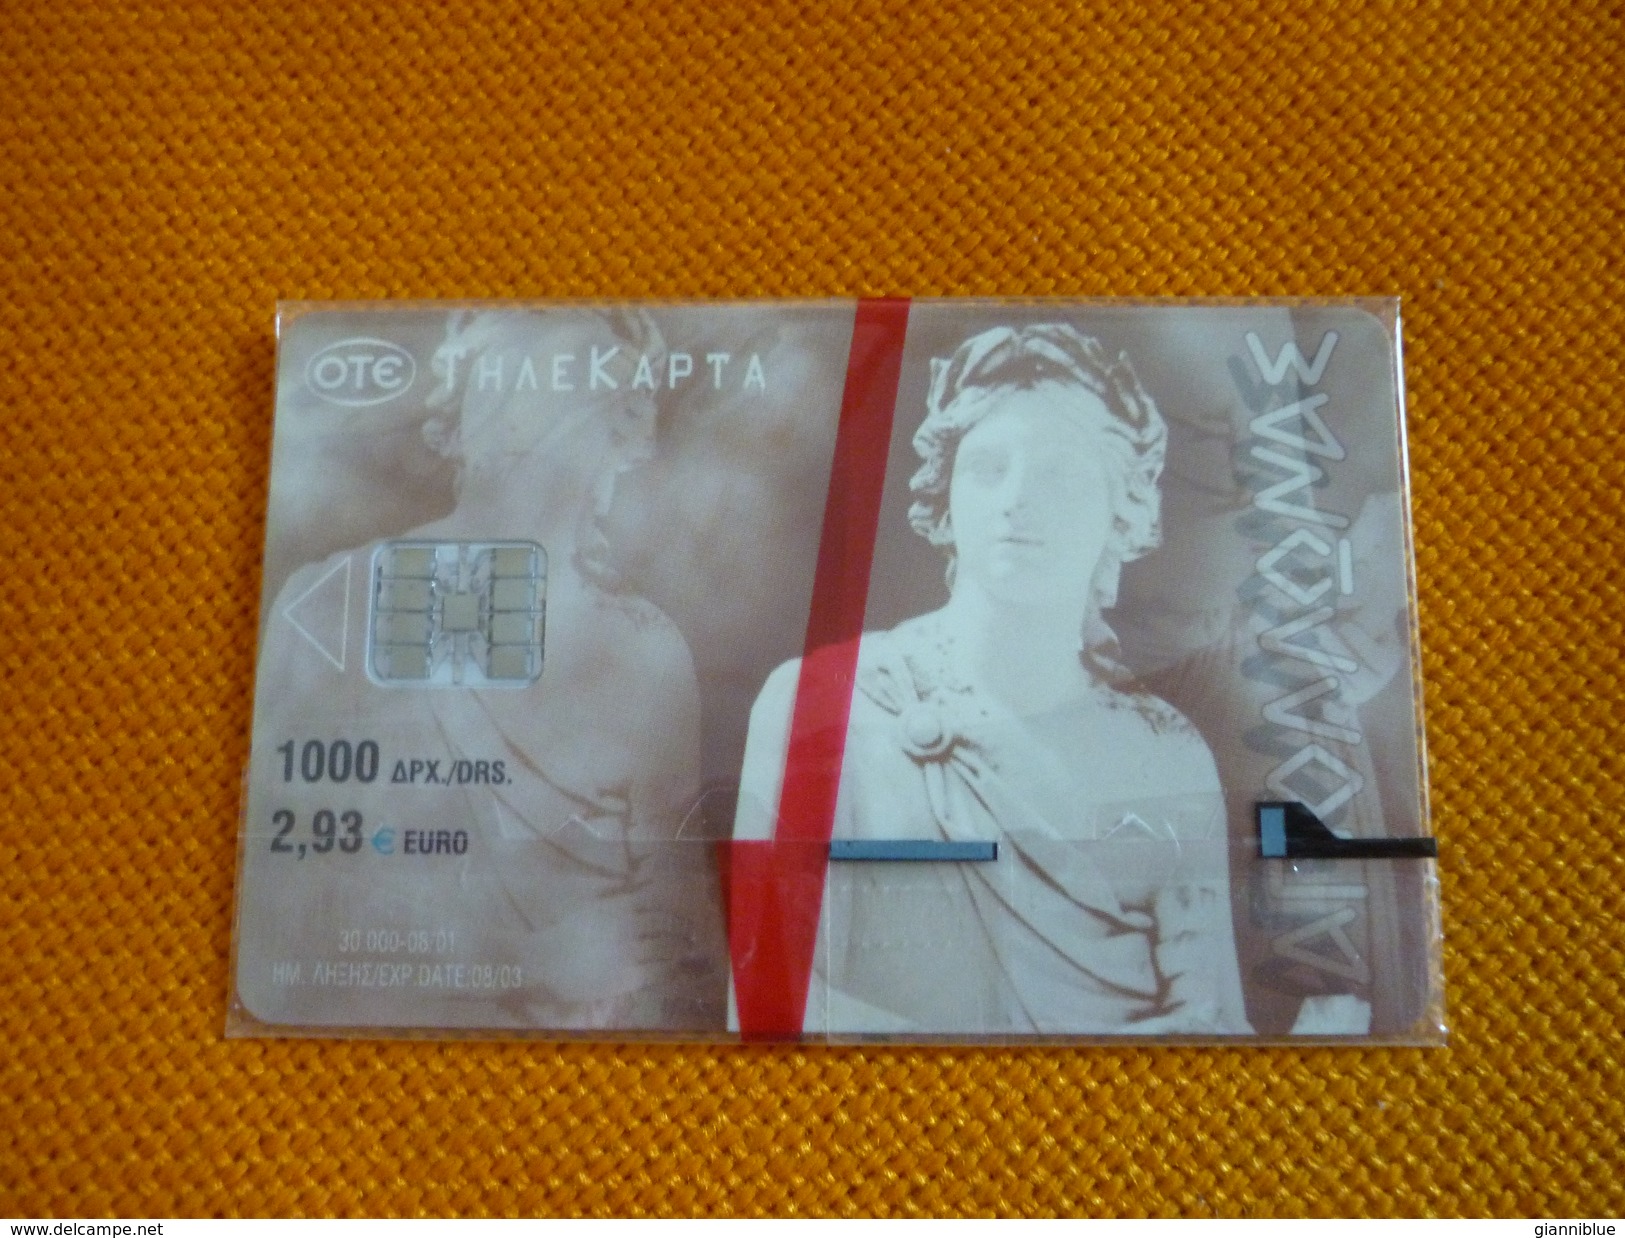 Greece Phonecard X1251 08/01 30.000 Apollon Apollo Apollonas (mint) - Greece